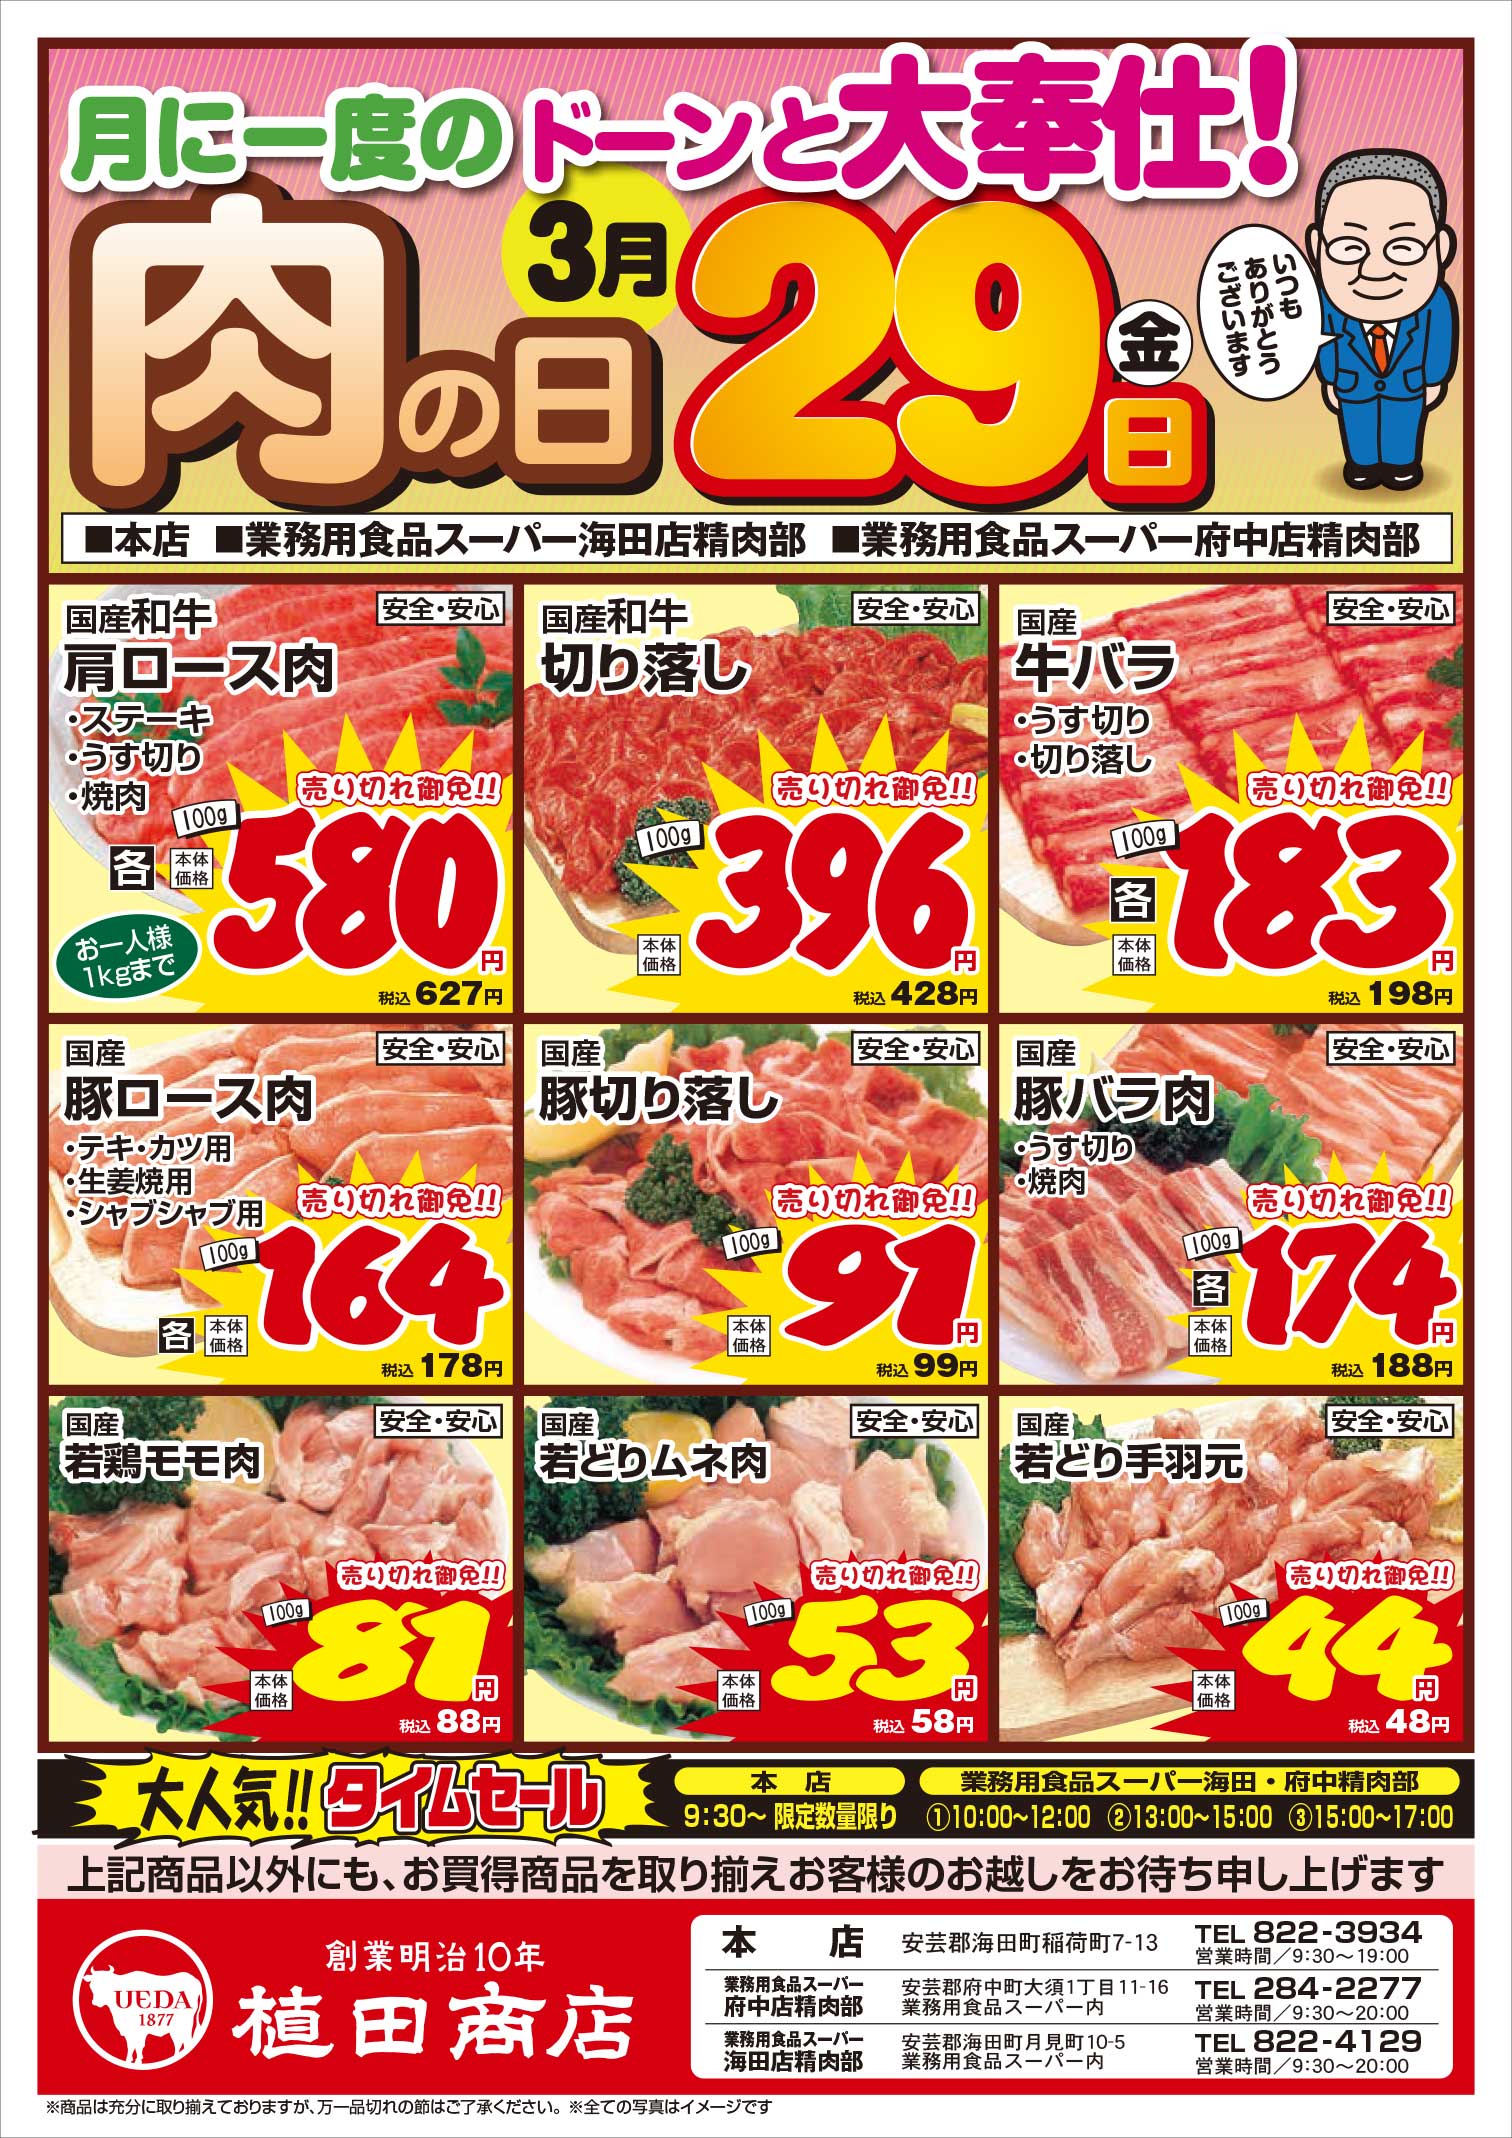 植田商店本店 3/29 肉の日セールチラシオモテ